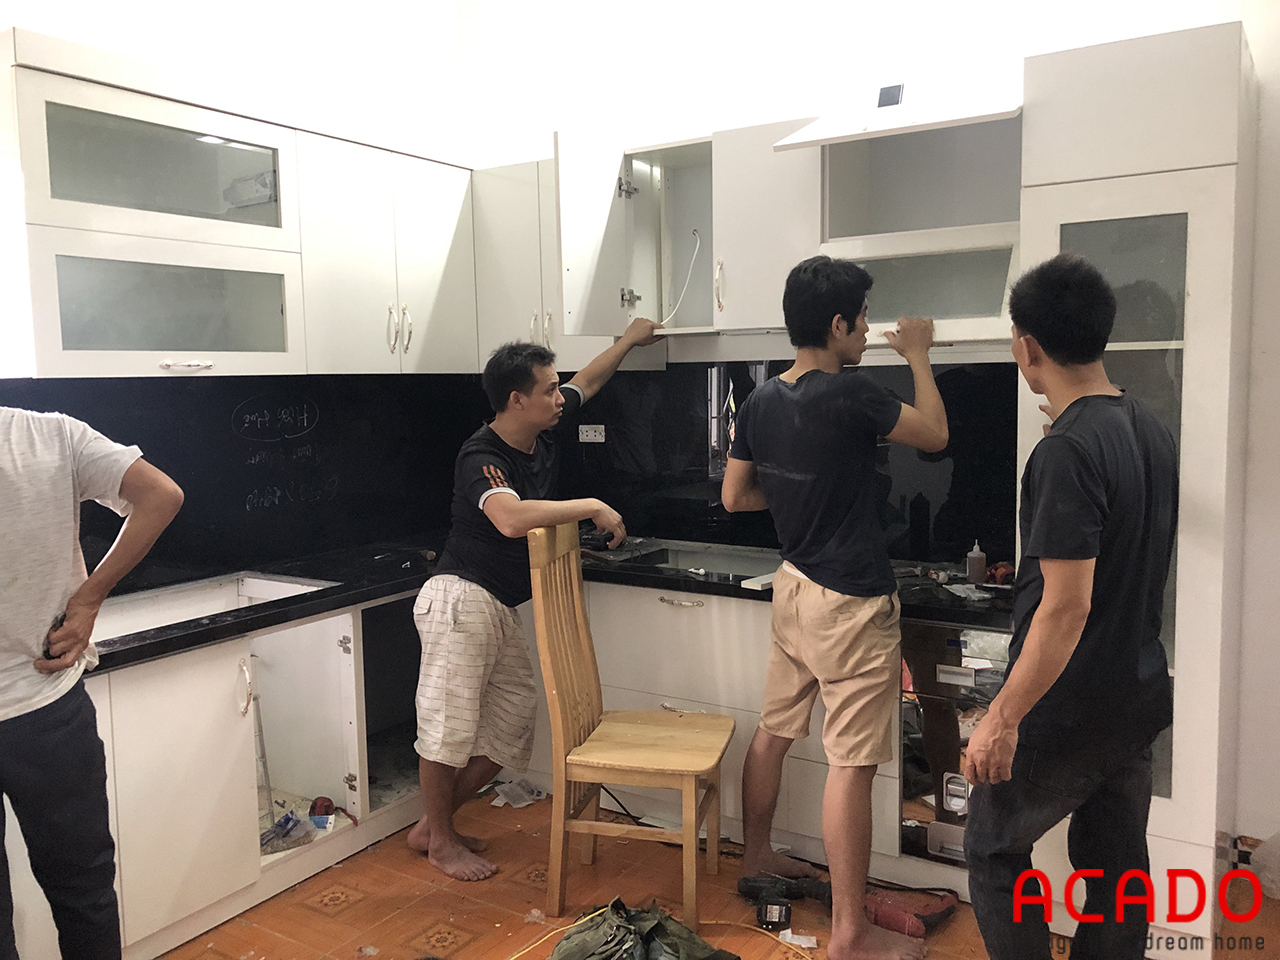 Sau khi thống nhất và chỉnh sửa bản vẽ theo mong muốn gia đình, ACADO đã bắt đầu tiến hành thi công tủ bếp